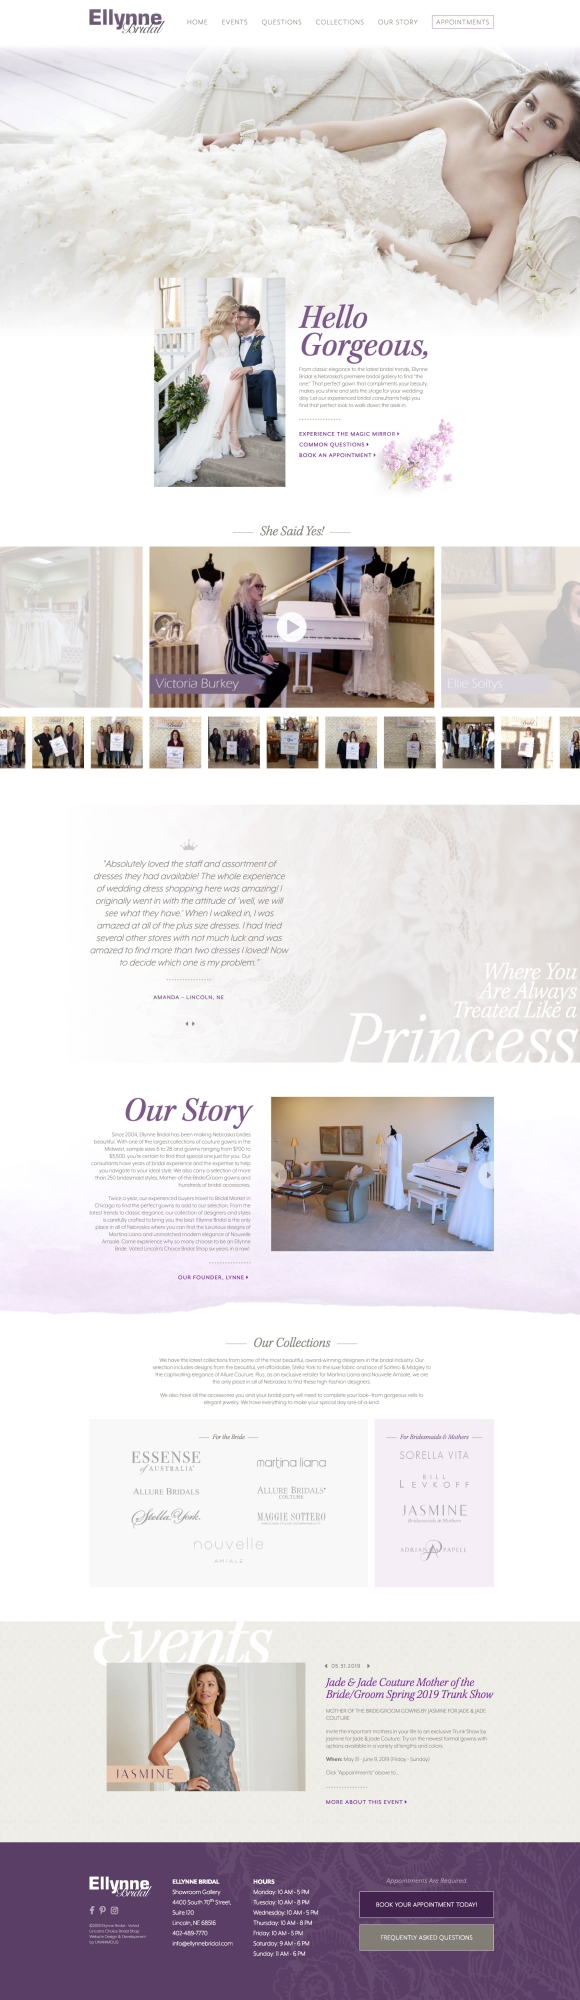 bridal website design home